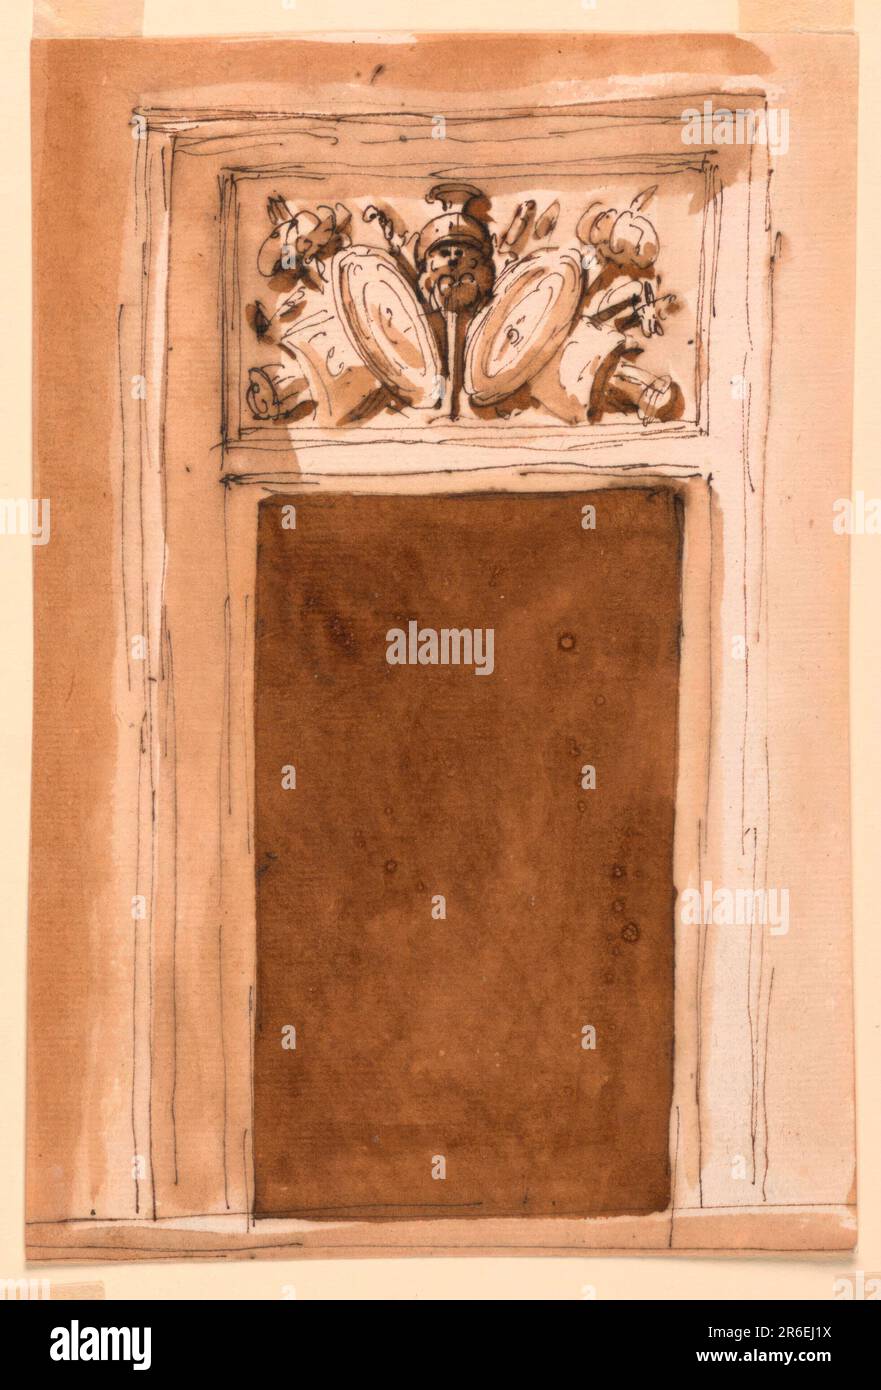 La porte est clairement encadrée. La porte est un panneau avec la représentation d'un trophée d'armes. La porte se compose d'un cadre incurvé moulé. Arrière-plan habituel. Stylo et encre brune, pinceau et lavage brun sur papier blanc cassé, doublé. Date: 1746-1809. Musée : Cooper Hewitt, Smithsonian Design Museum. Banque D'Images